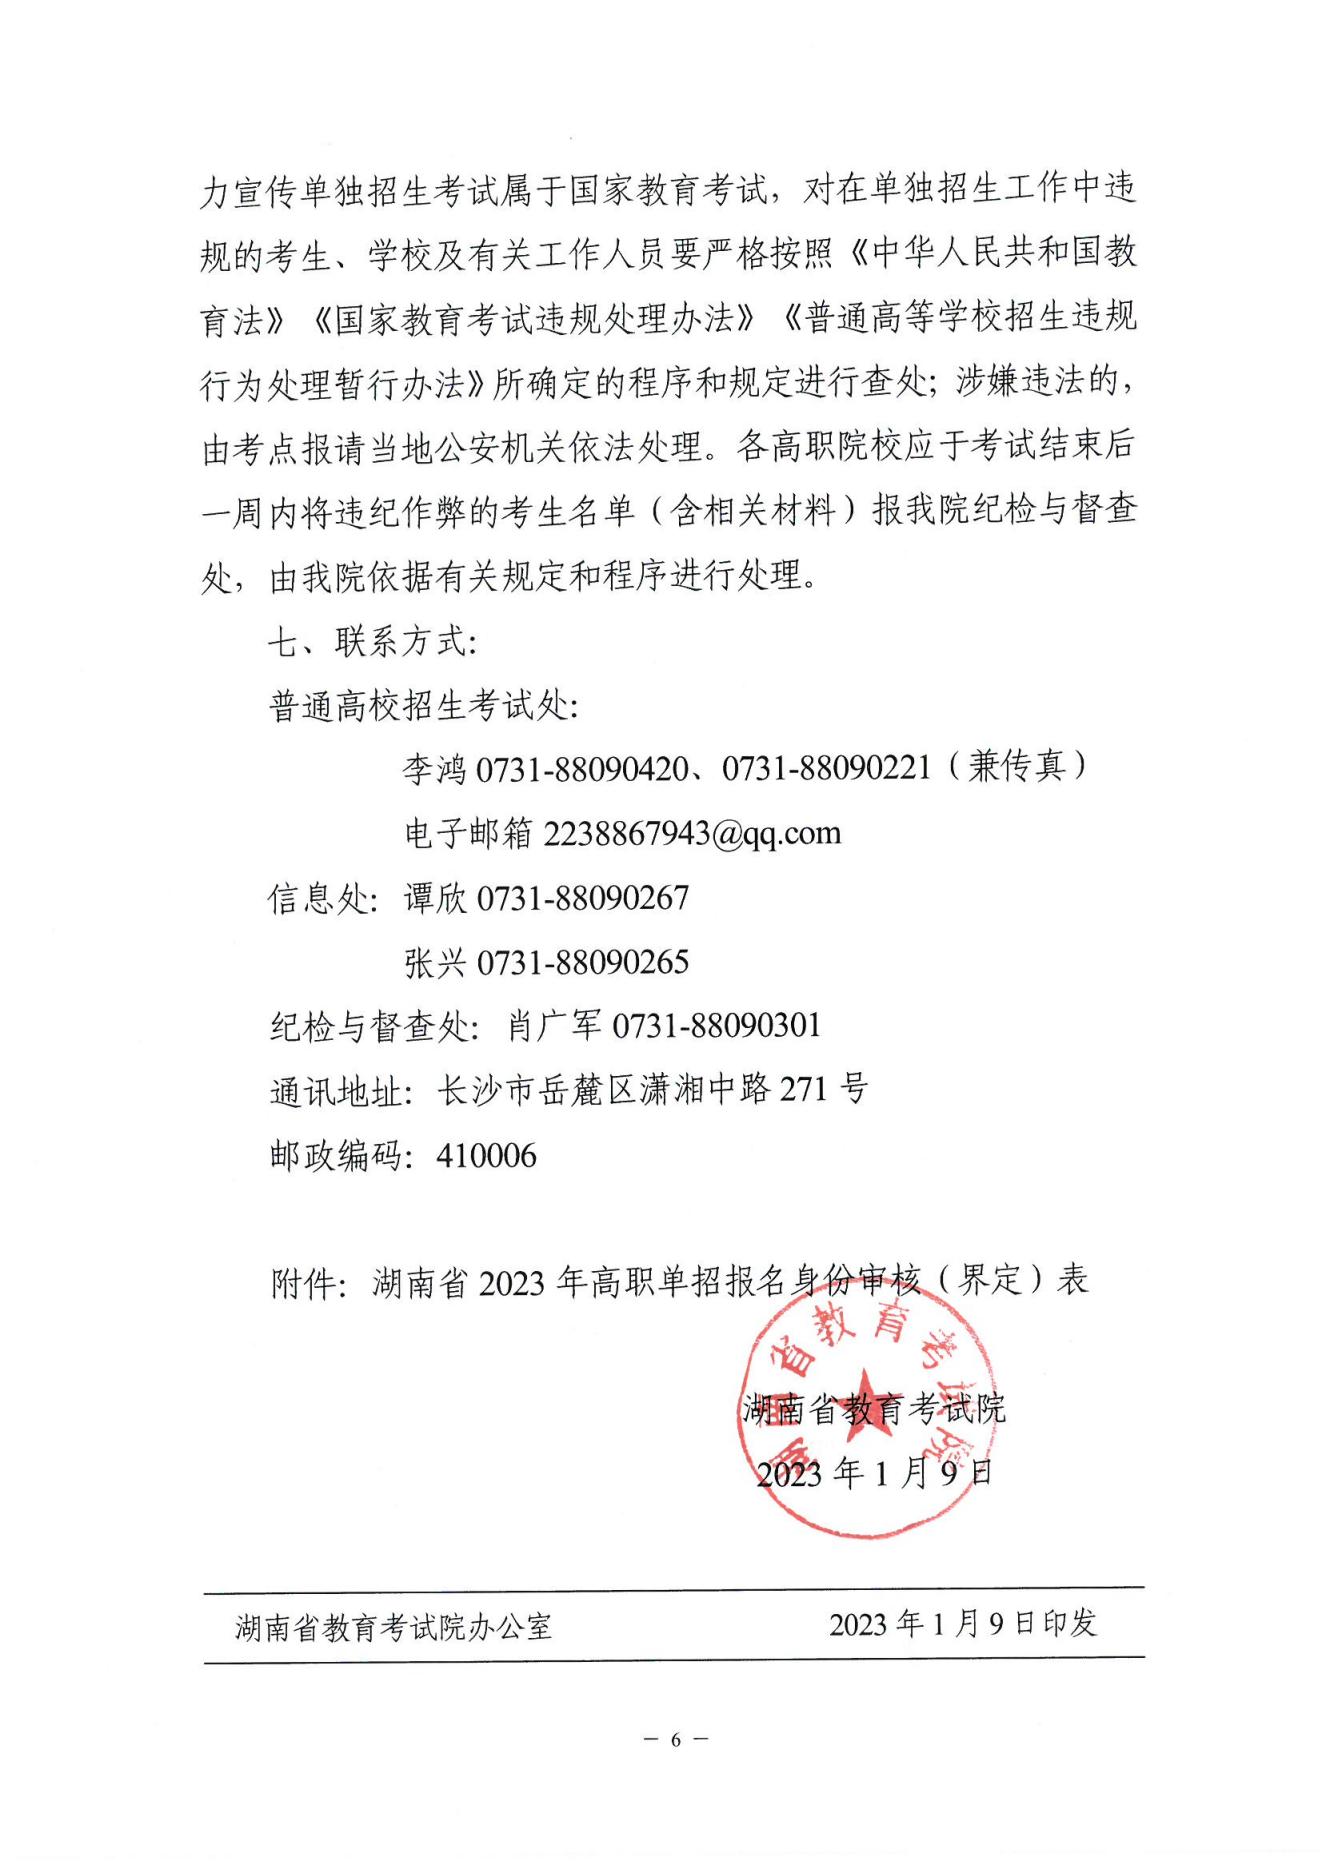 2023年湖南省高职院校单独招生通知